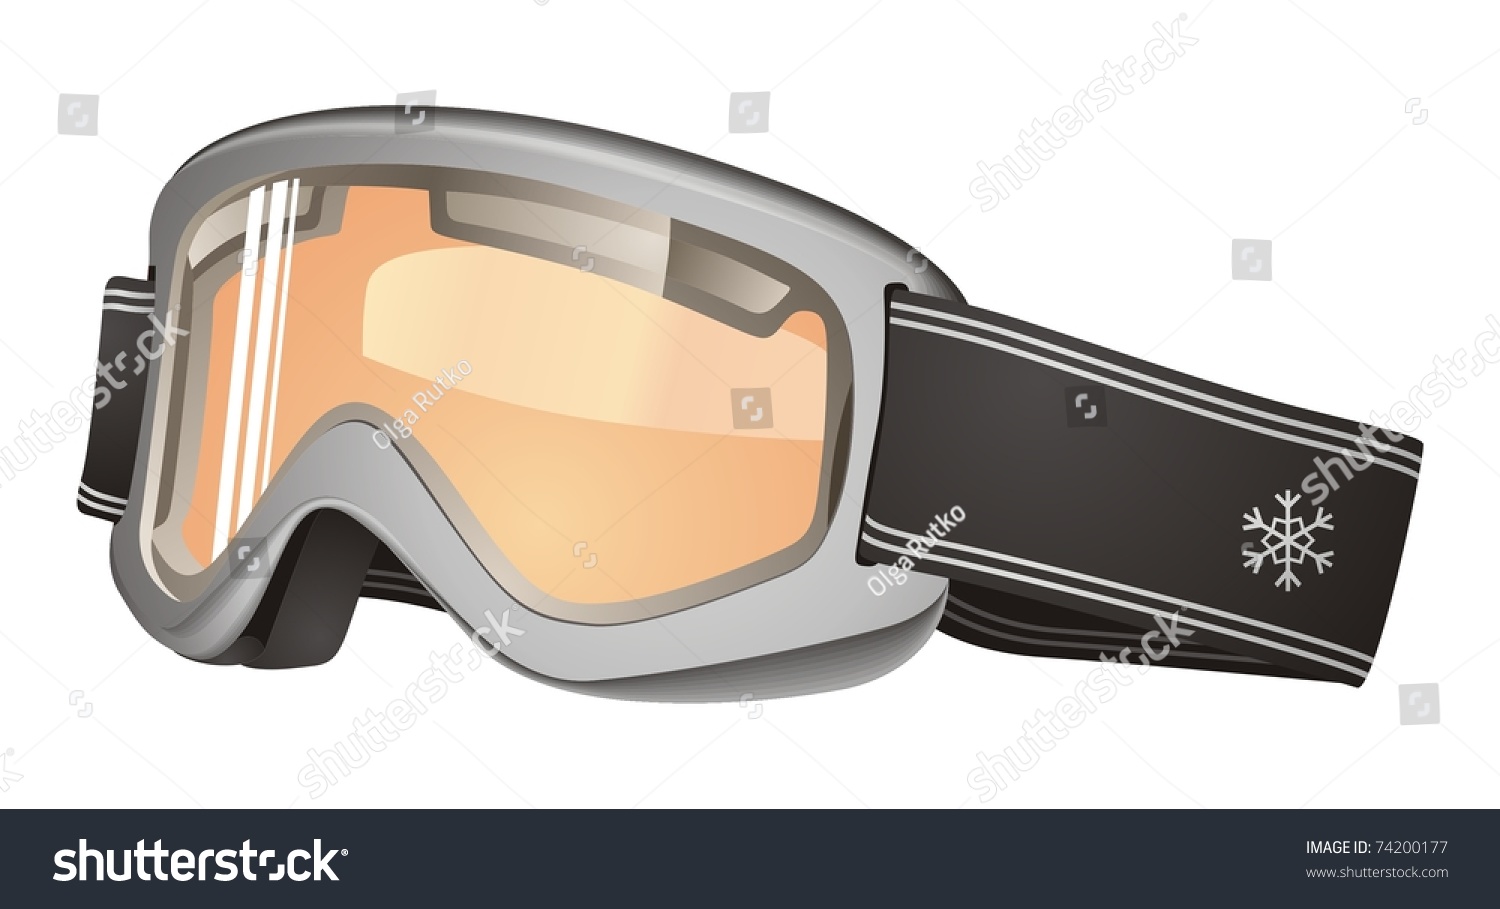 Ski Mask Vector Stock Vector 74200177 - Shutterstock